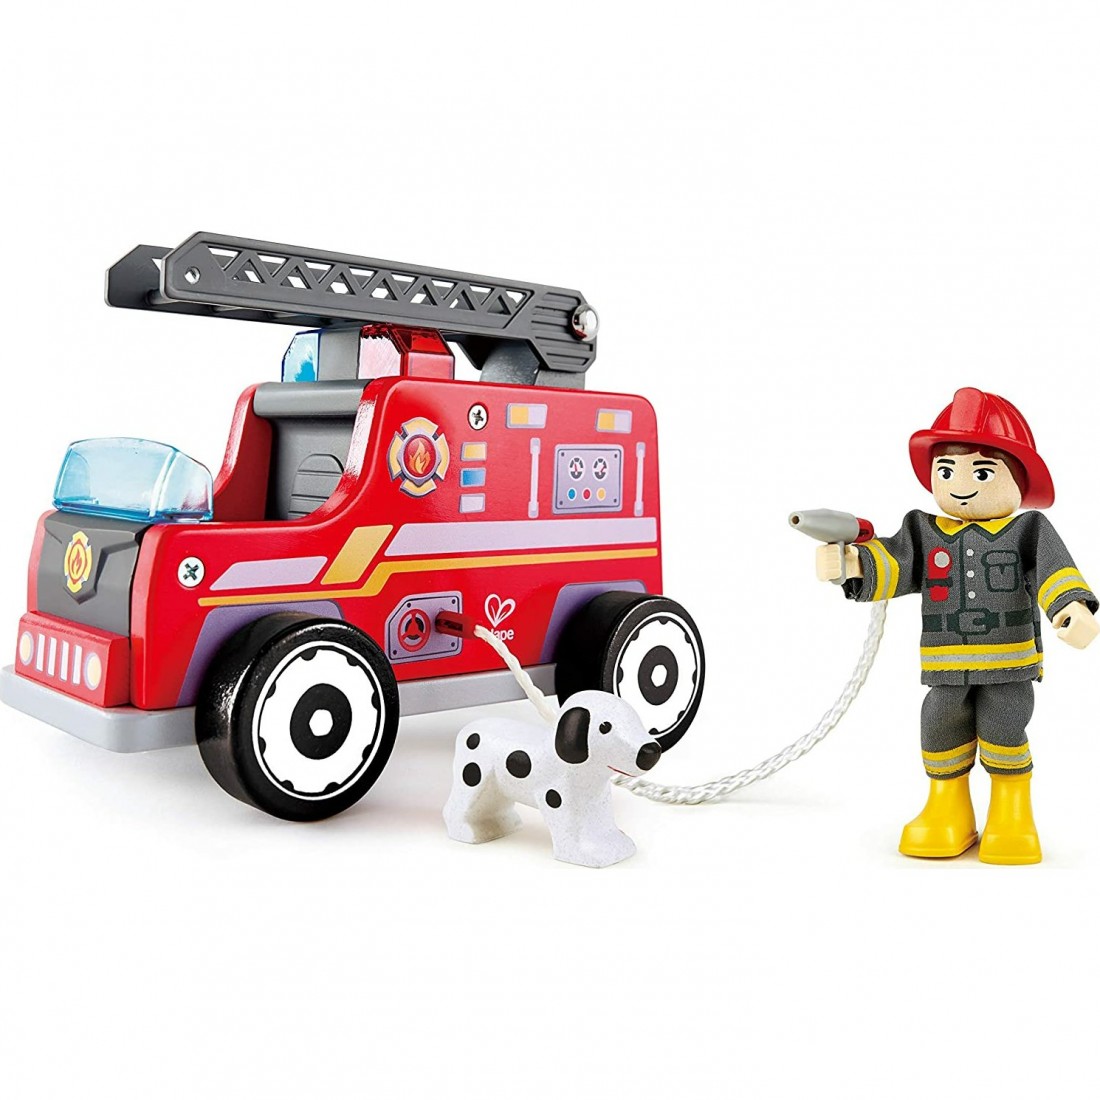 Camion de pompier en bois All animals : Trixie